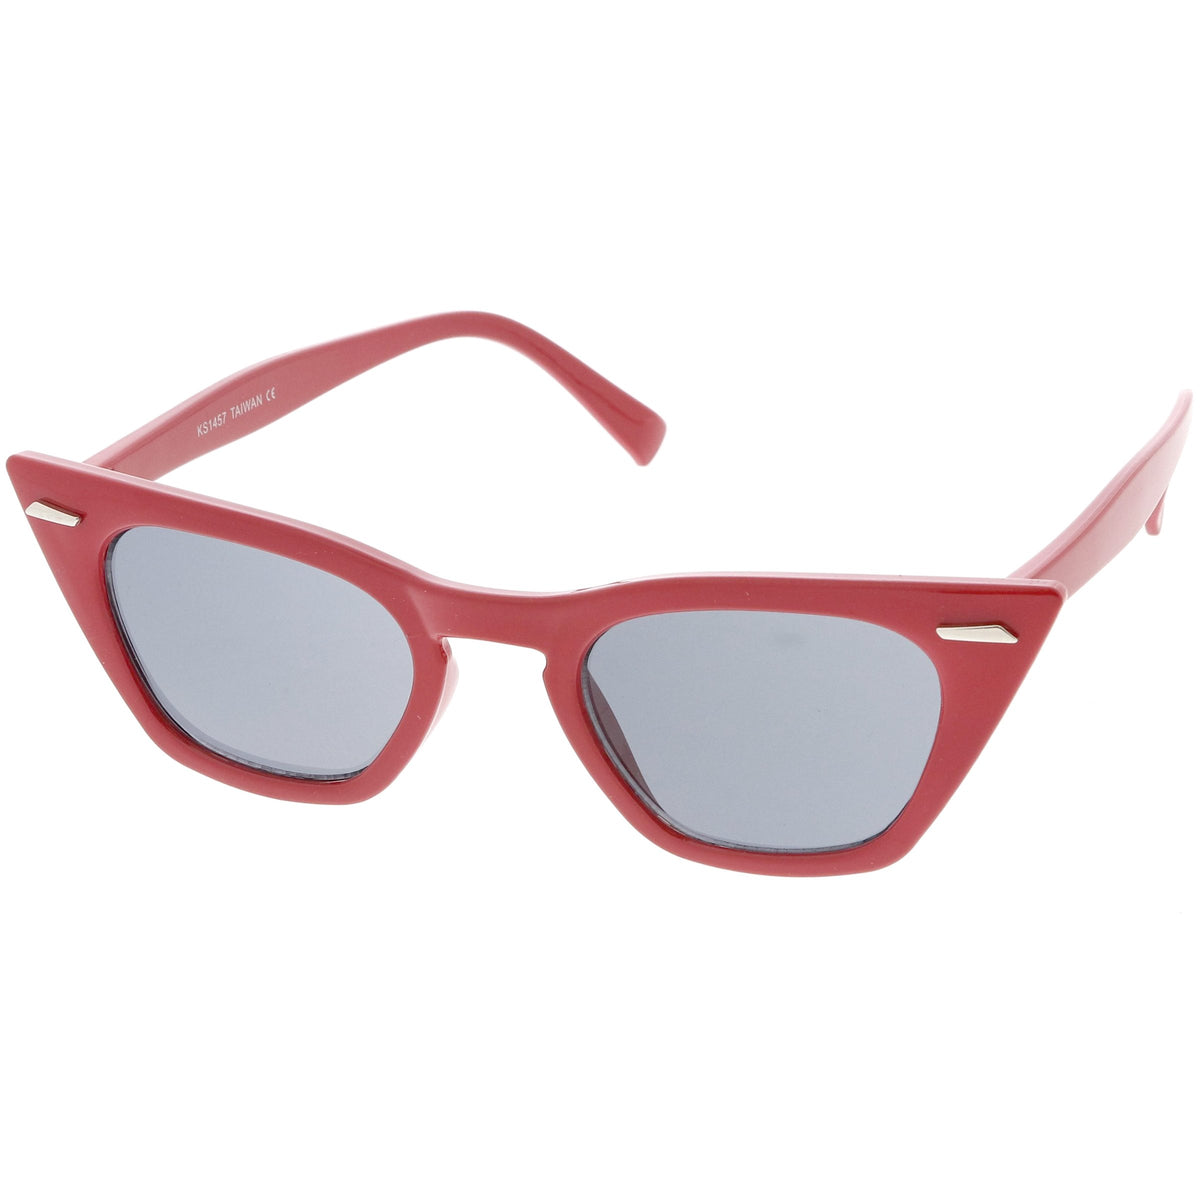 Womens Sharp Pointed Flat Top Cat Eye Retro Sunglasses 8683 Zerouv 